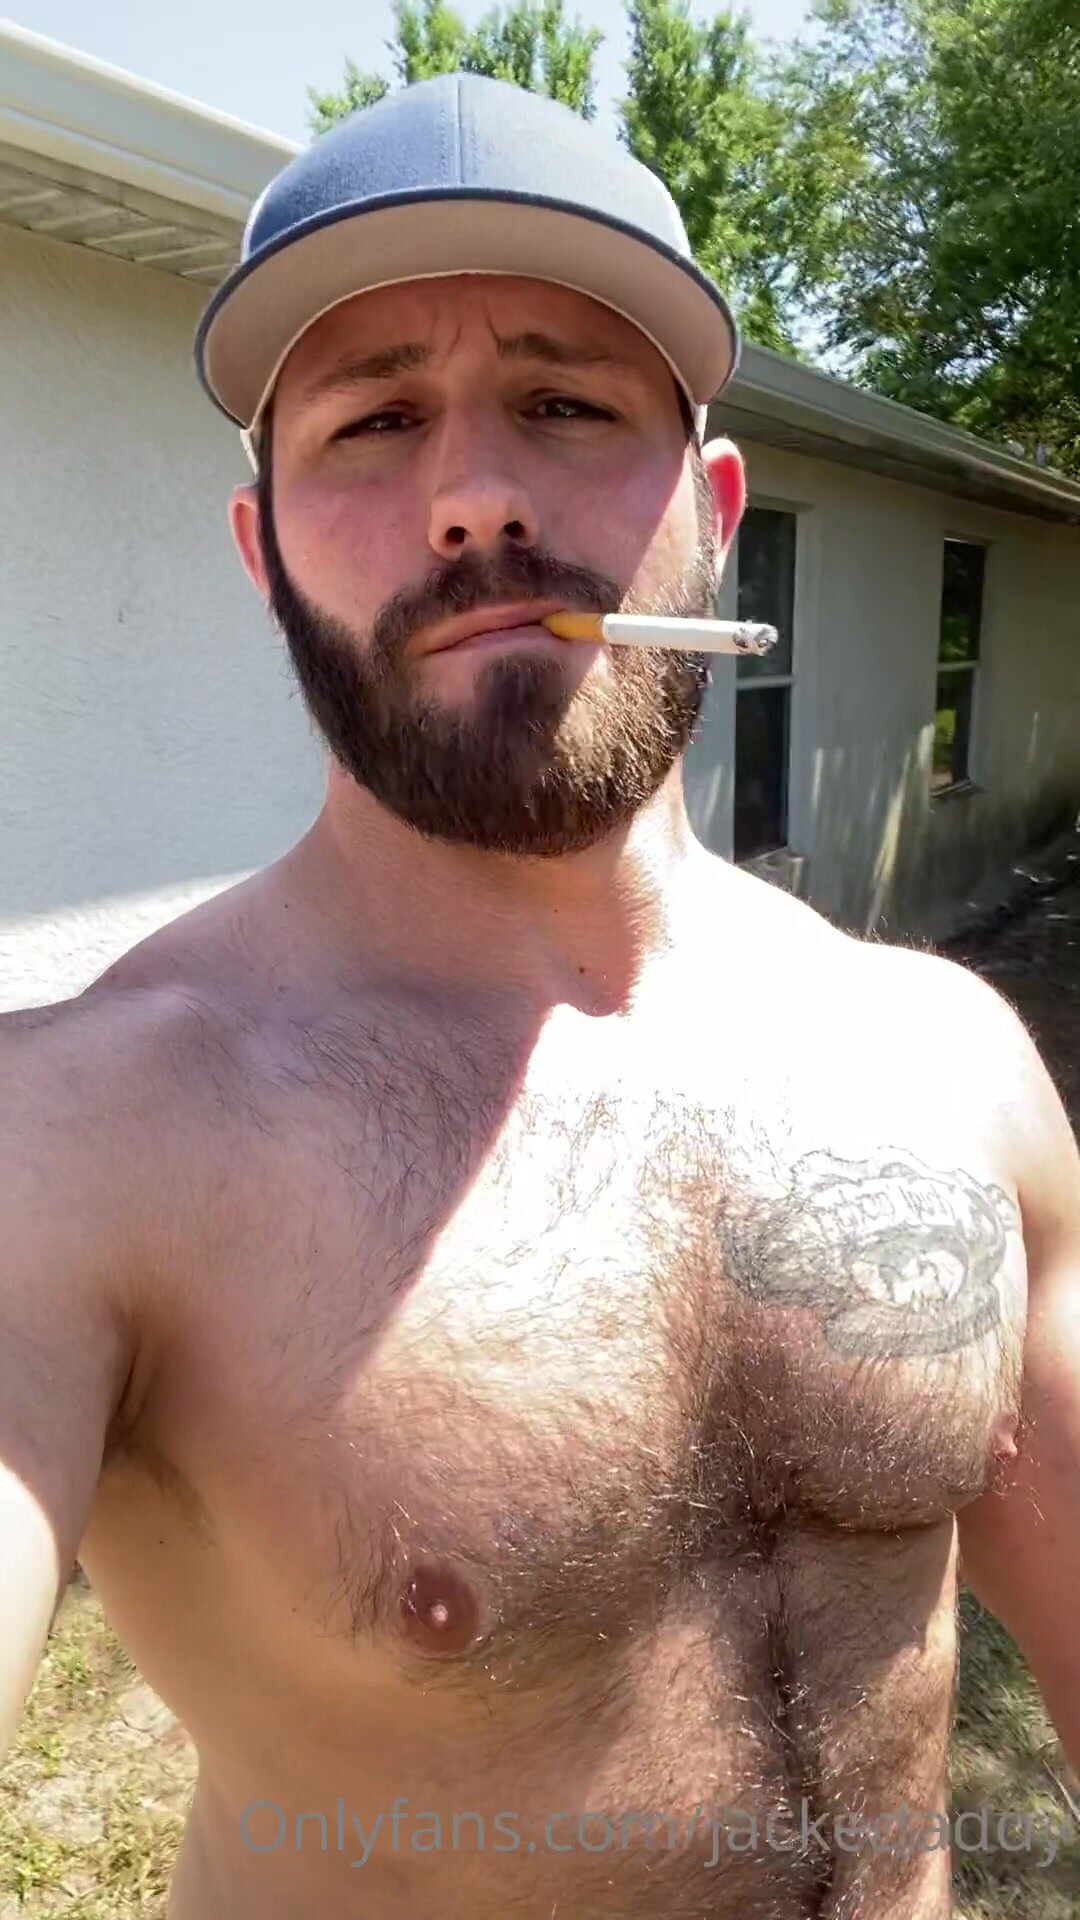 Hot Guy Smoking - video 3